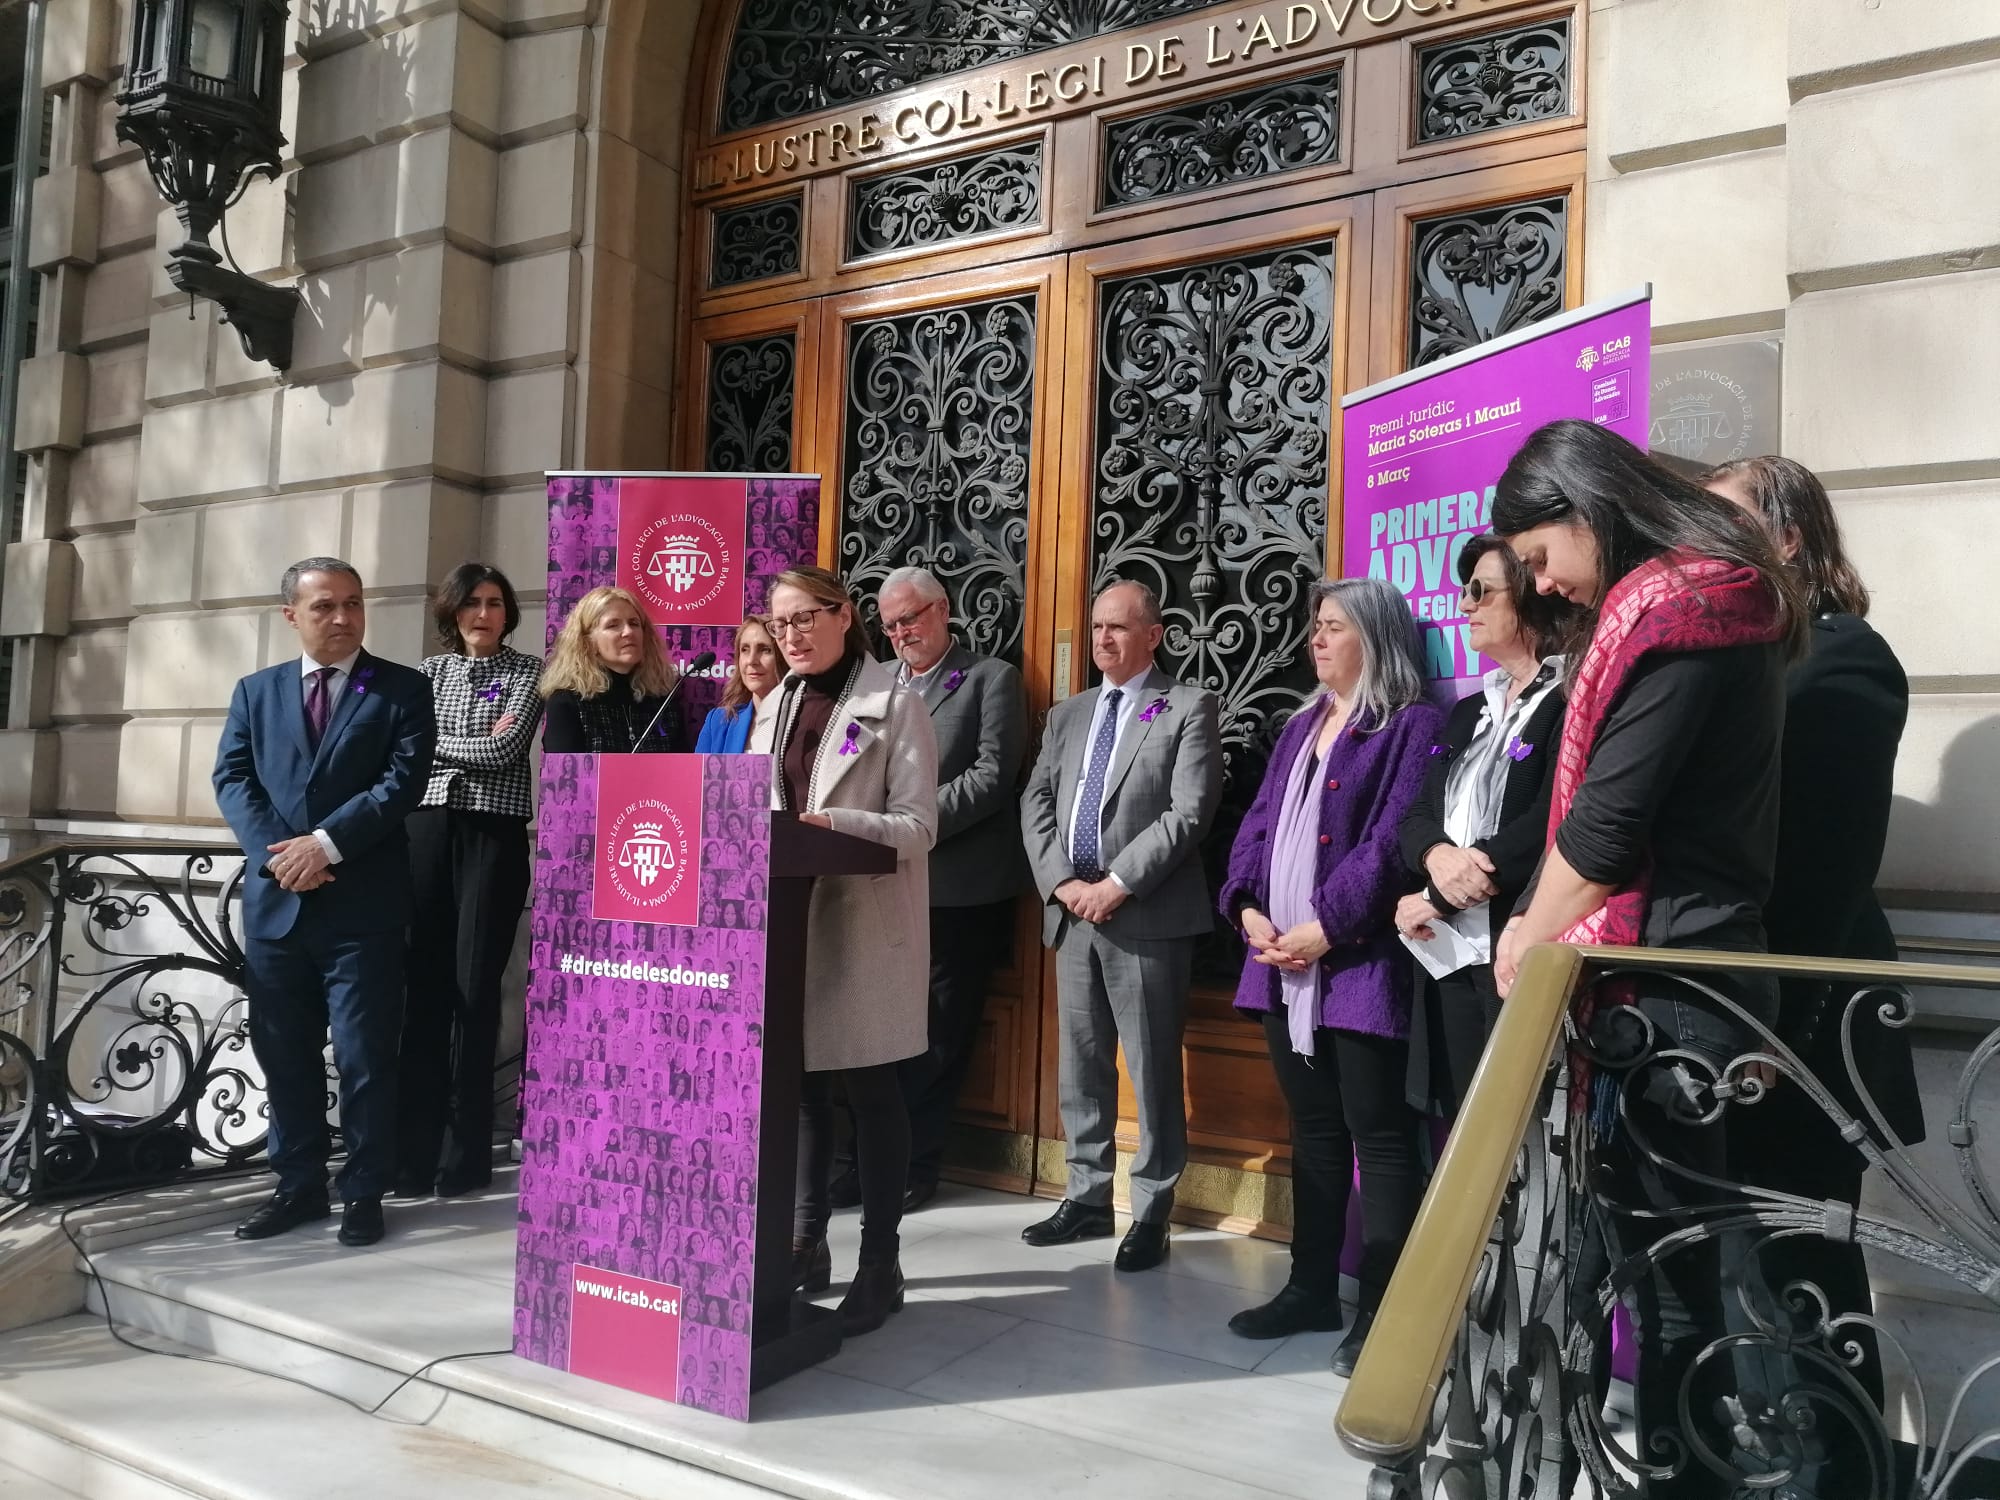 Els advocats de l'àrea de Barcelona assisteixen 22 víctimes de violència de gènere i masclista al dia